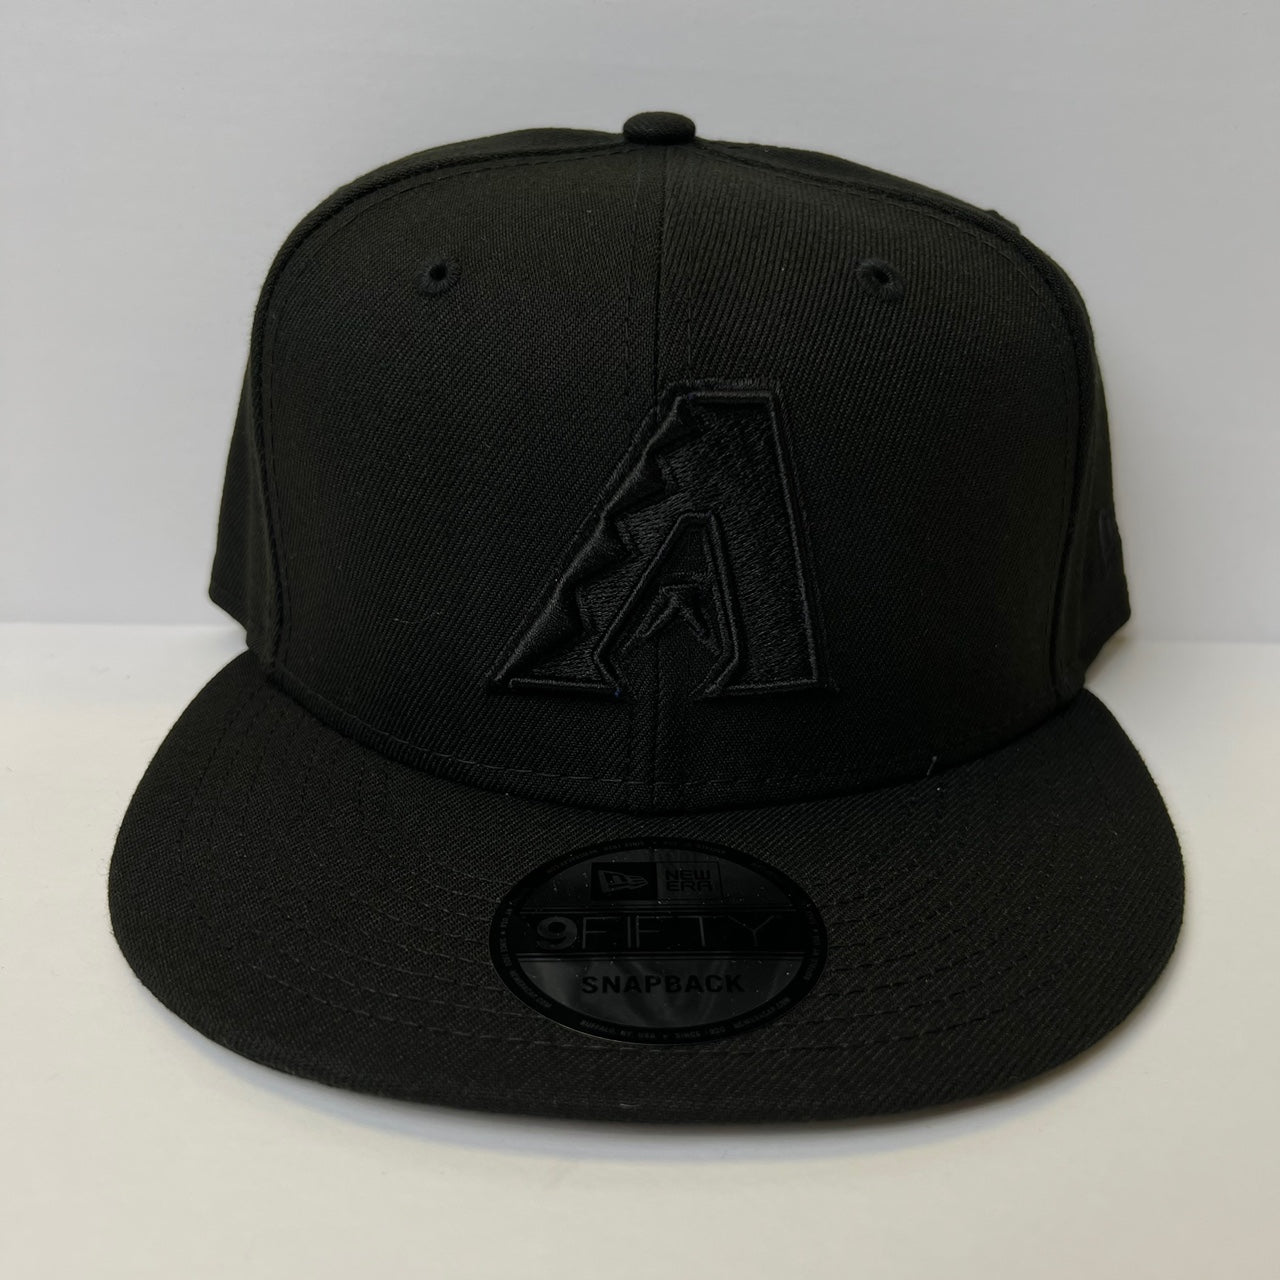 New Era Arizona Diamondbacks 9FIFTY Snapback Hat